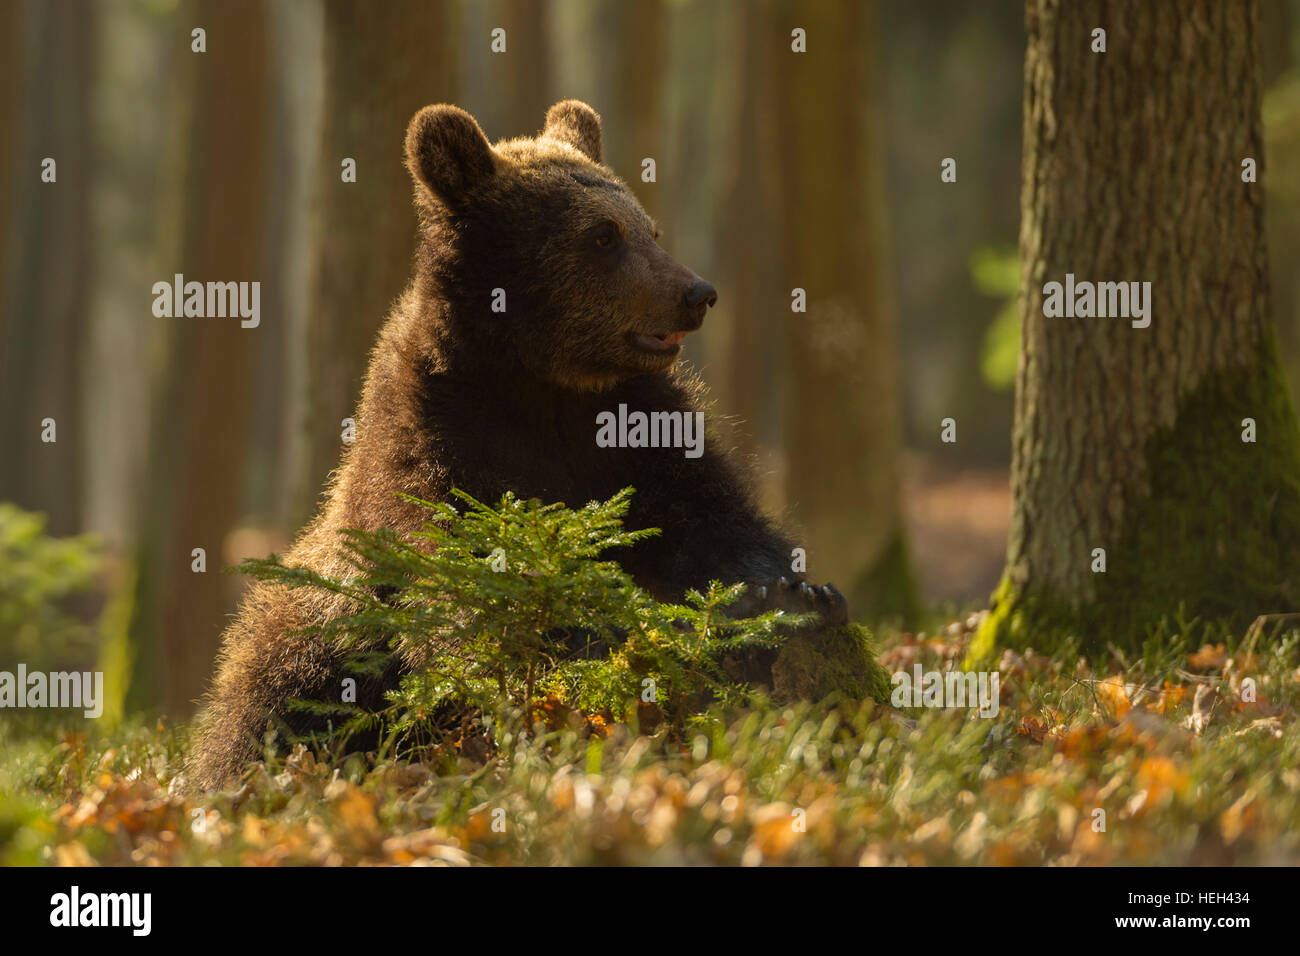 Ours brun européen / braunbaer ( Ursus arctos ), adulte cub, assis sur le sol de la forêt, a l'air drôle, lumière dorée. Banque D'Images